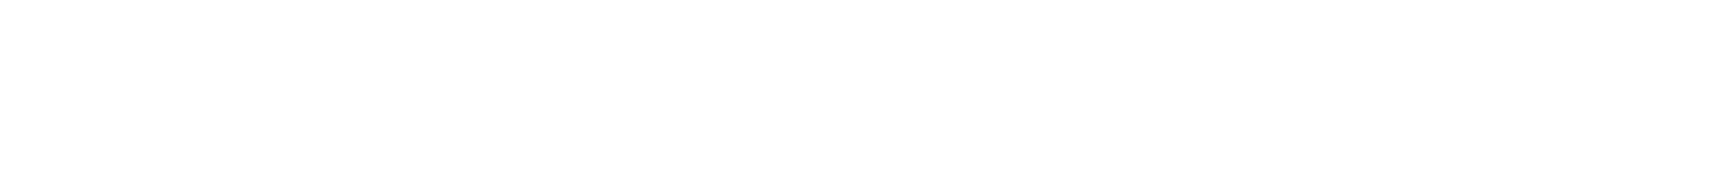 Magda Tromp, Isa Koolman, Arline Henriquez, Judith Boekhoudt, Tina Tromp y Vivian Ruiz 